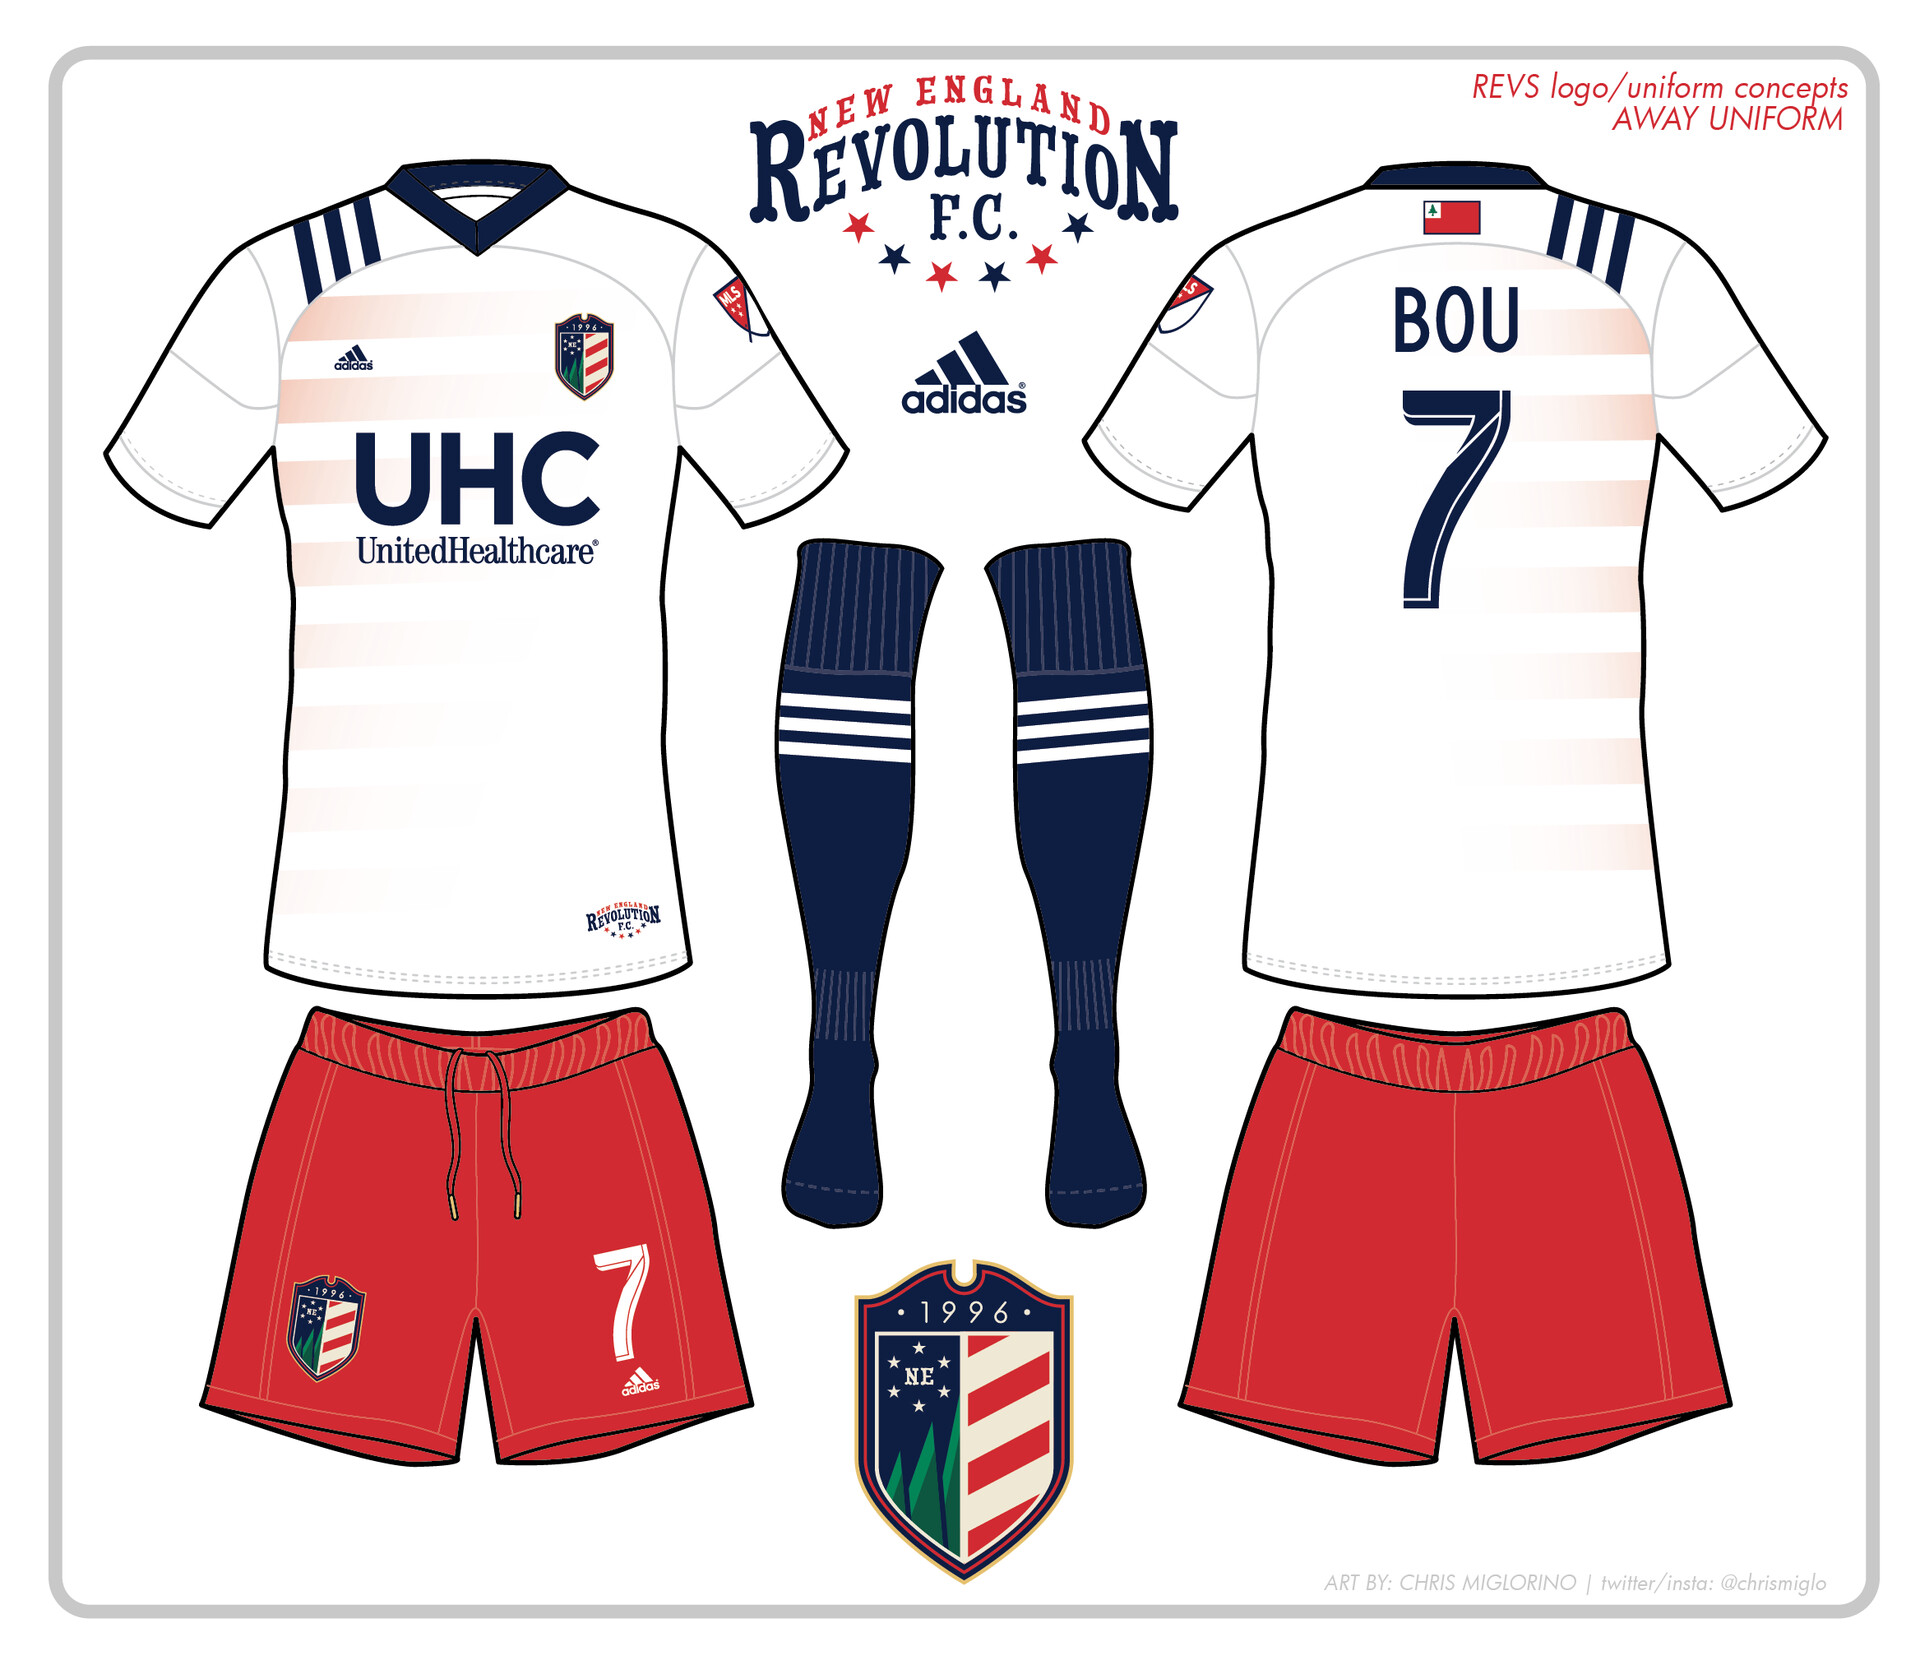 Chris Miglorino - Logo/Uniform Design Concepts - New England Revolution